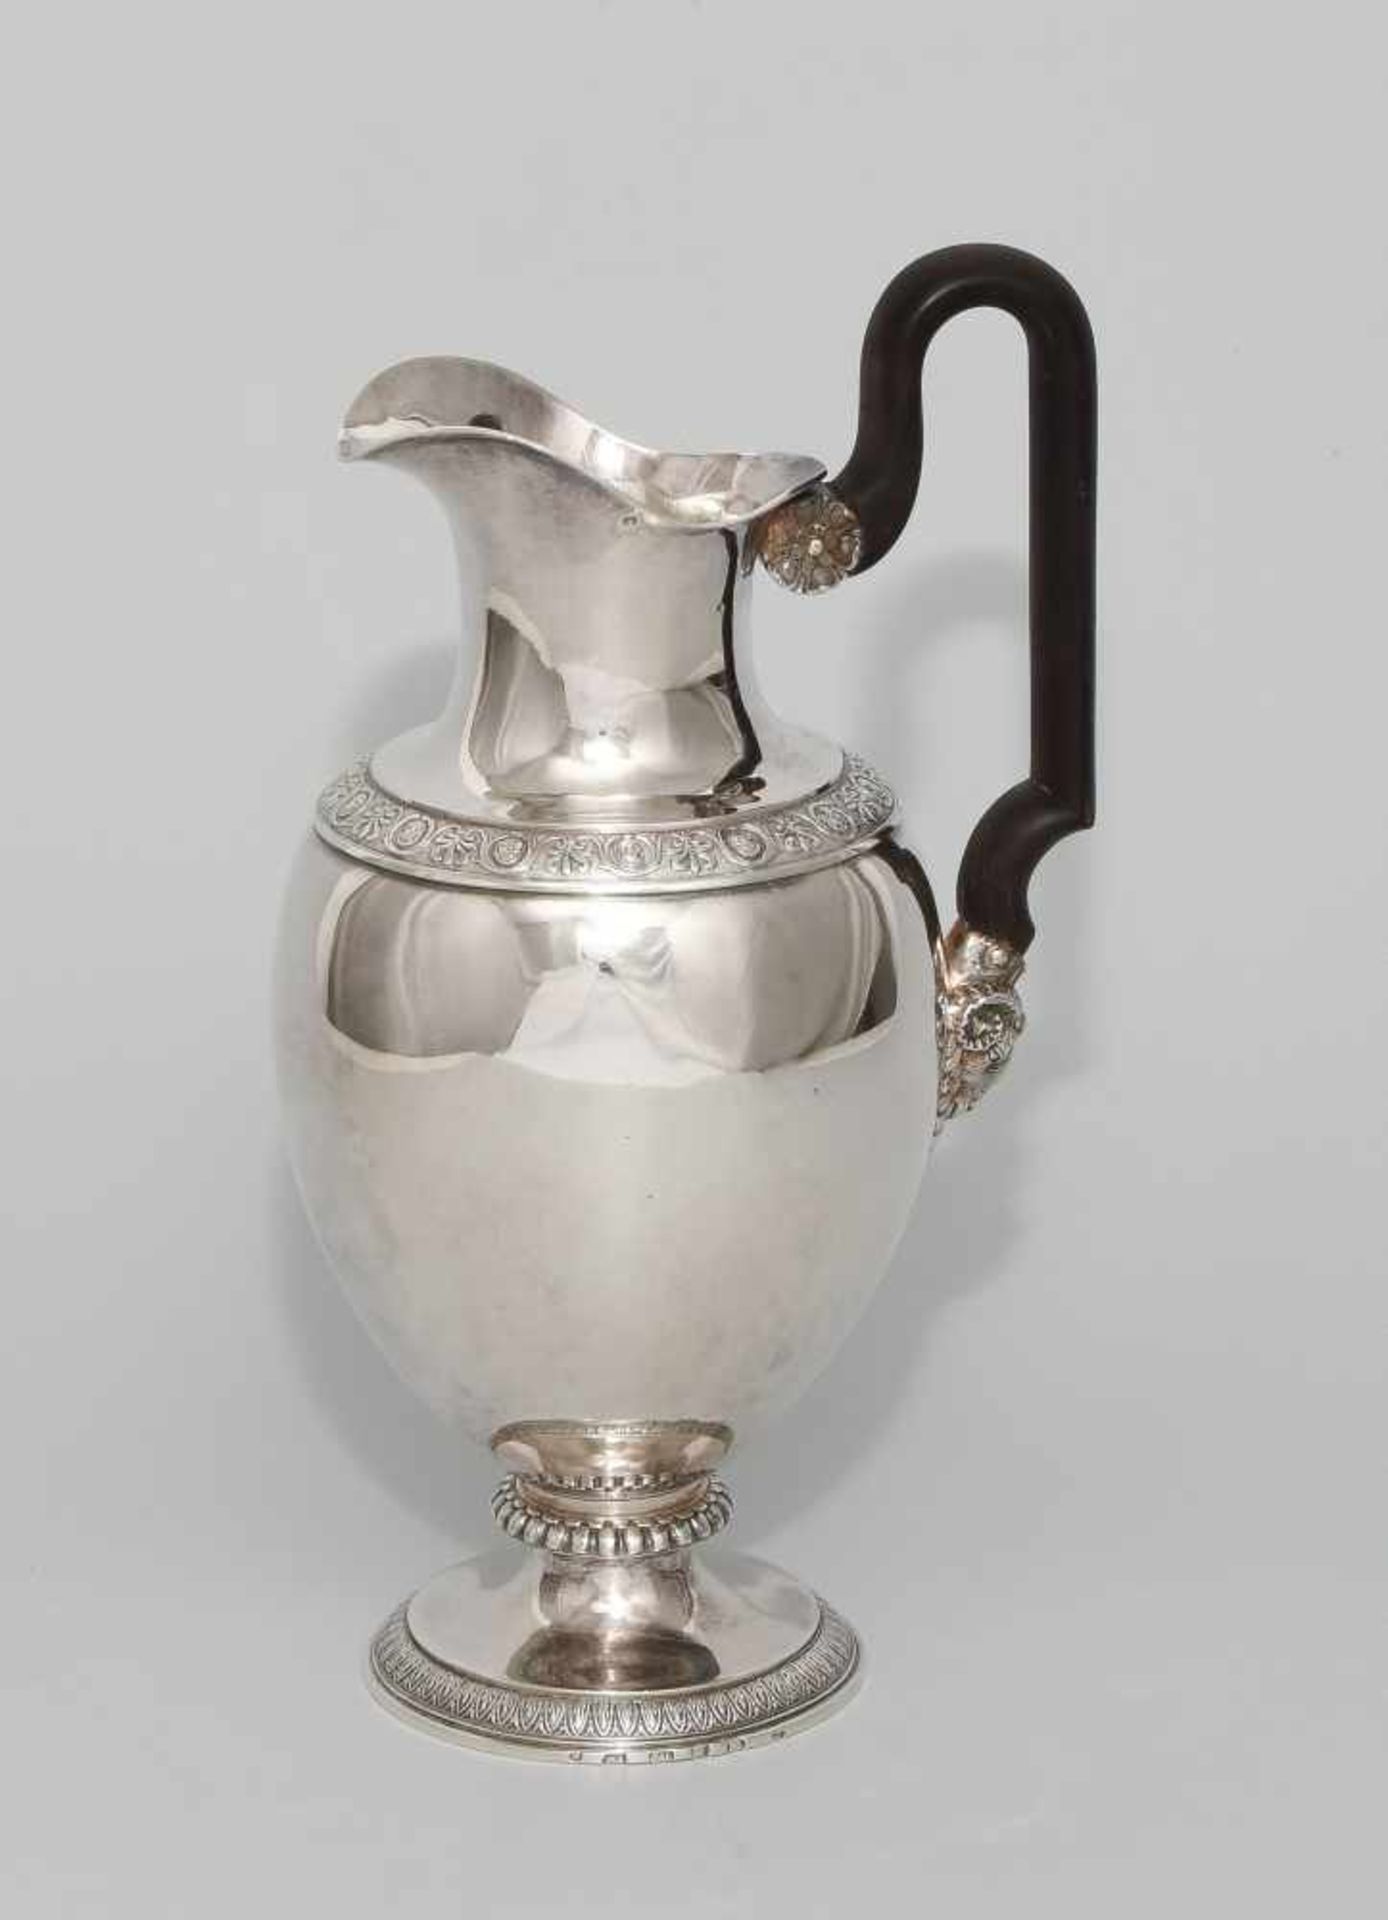 Kaffee- und Wasserkanne, BernUm 1820. Silber. Werkstatt Rehfues. Runder, eingezogener Fuss, - Bild 2 aus 5